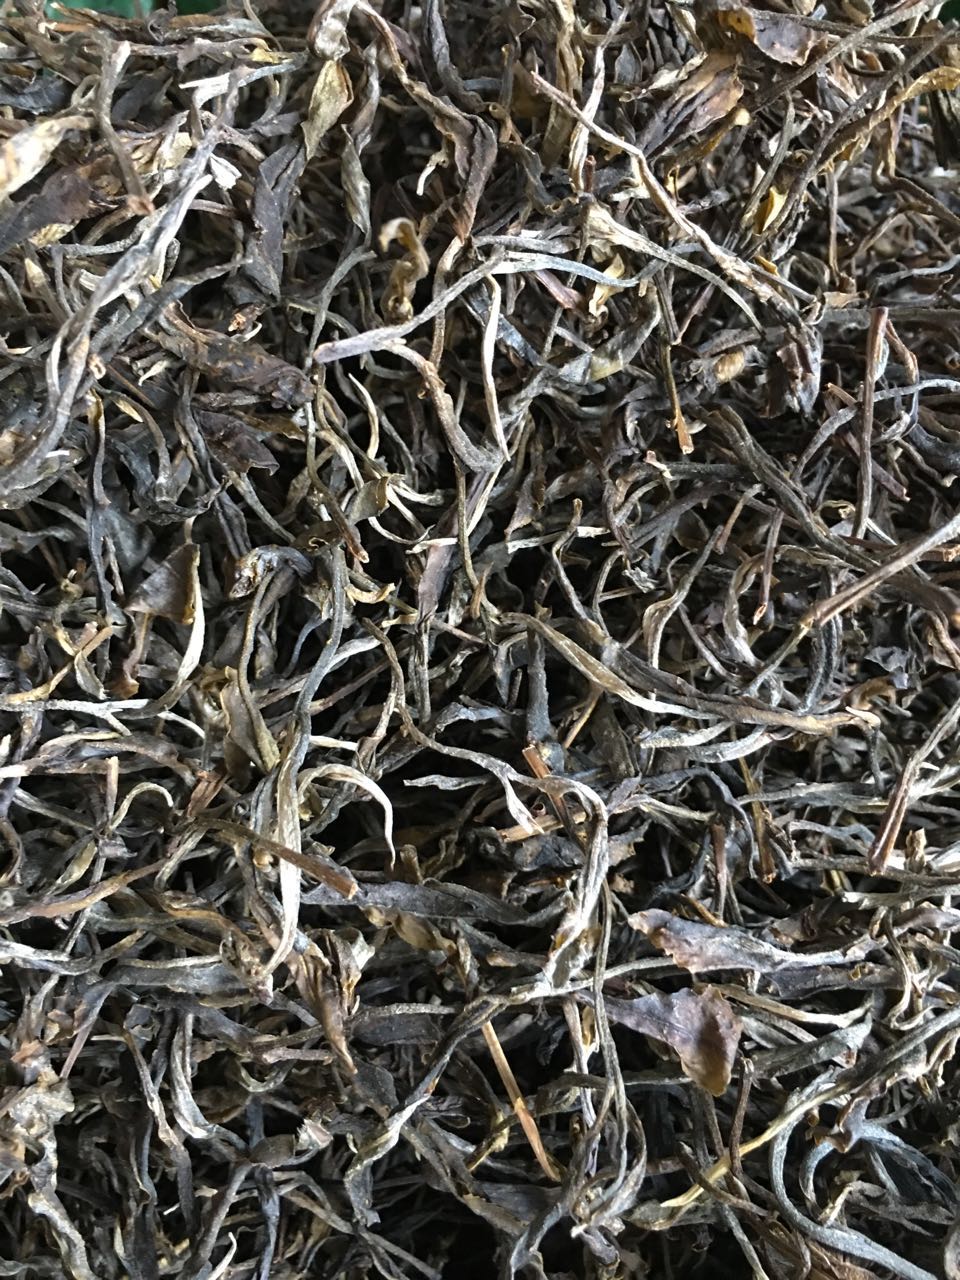 老挝灰茶副作用图片